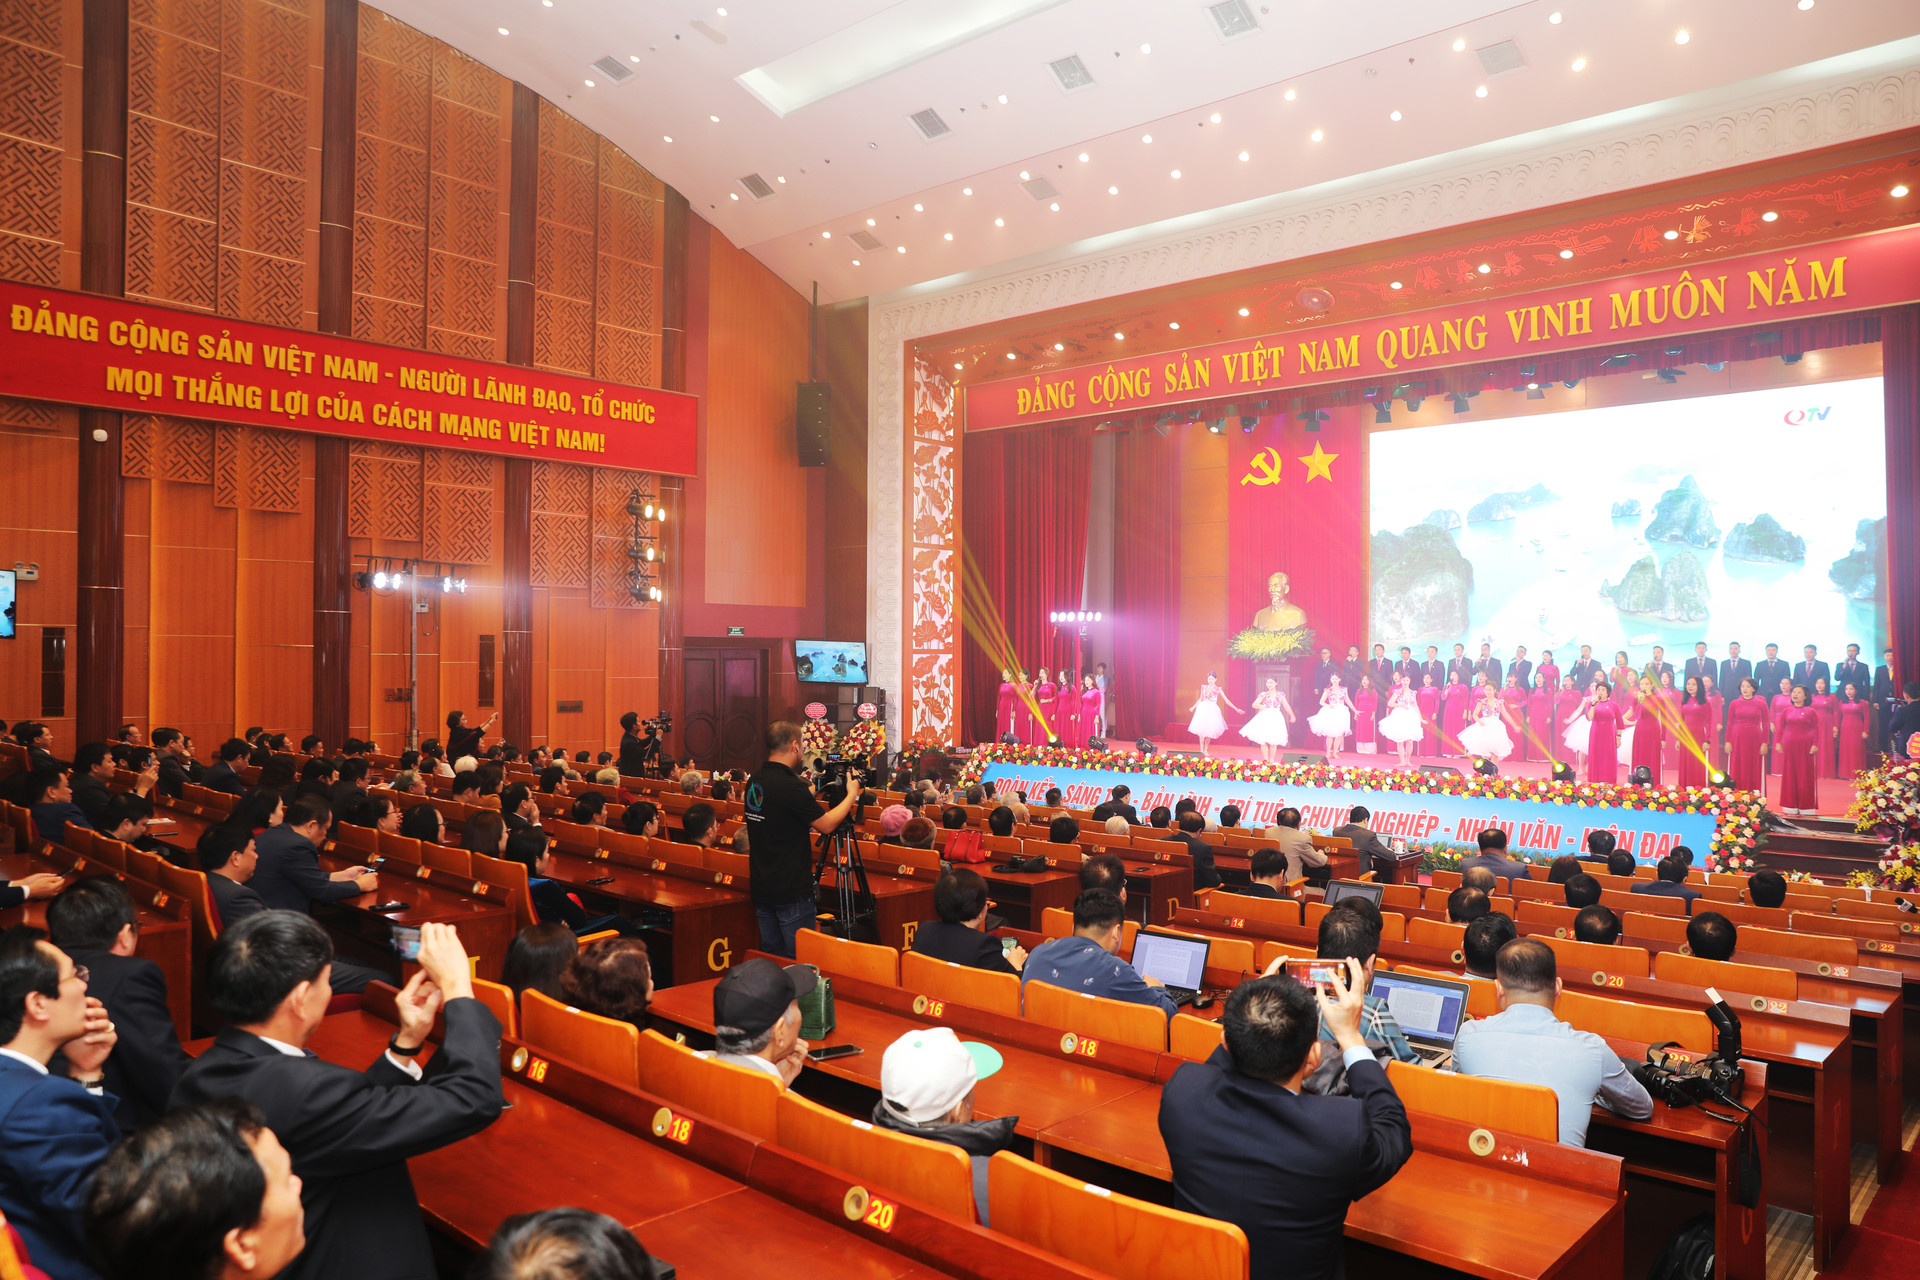 'Mô hình Trung tâm Truyền thông Quảng Ninh là một quyết sách chính trị đột phá'- Ảnh 2.